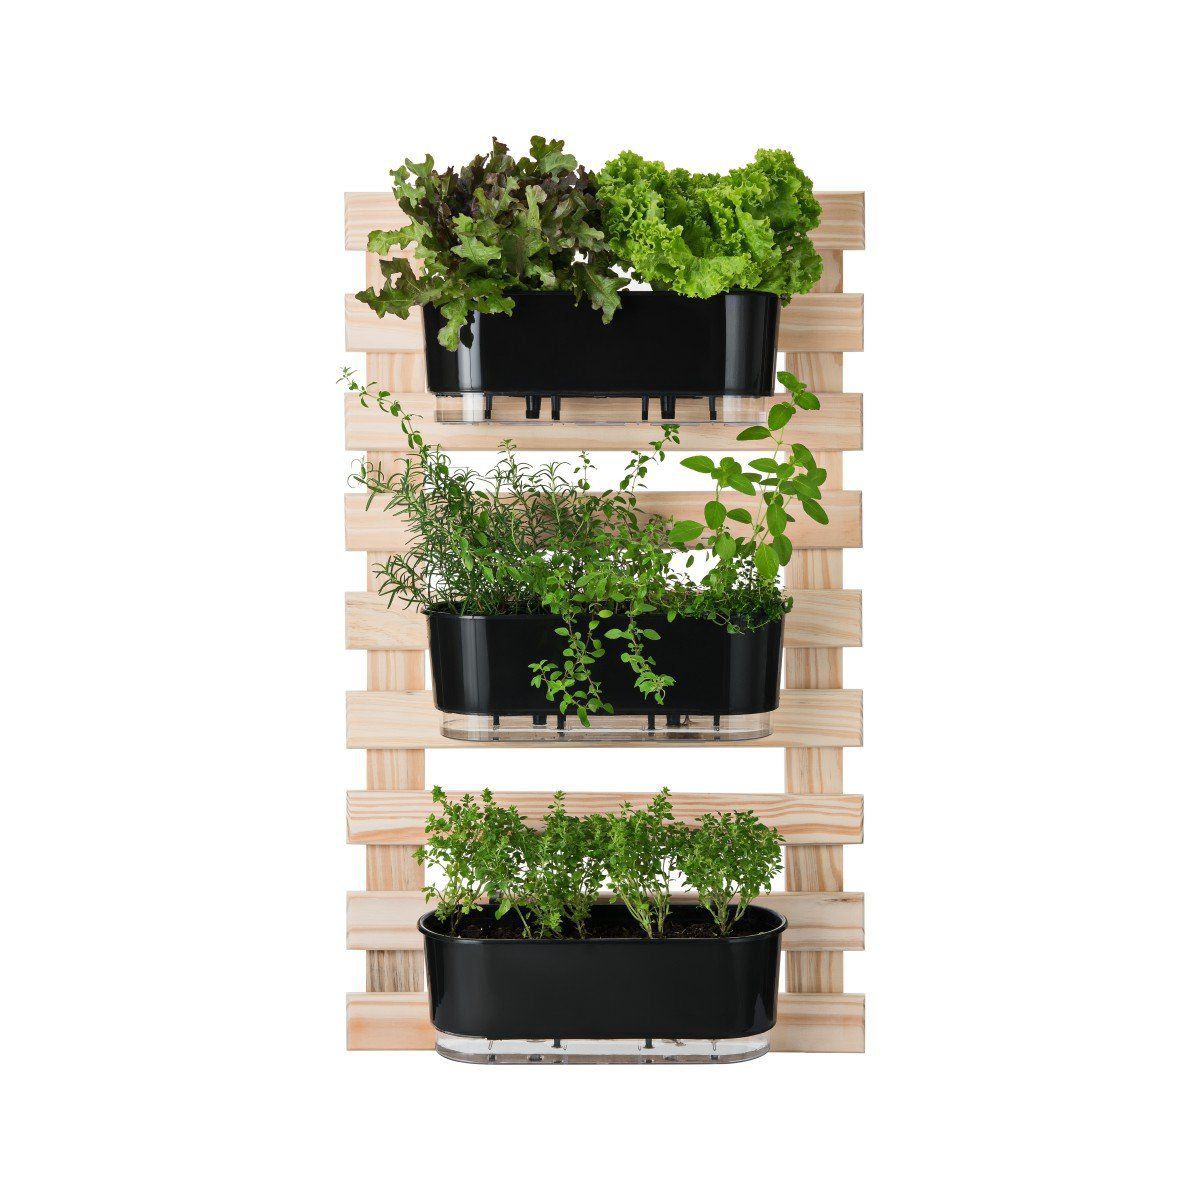 Kit Horta Vertical 100cm x 60cm com 3 Jardineiras Pretas Raiz + Suporte + Substrato + Argila - Foto 0